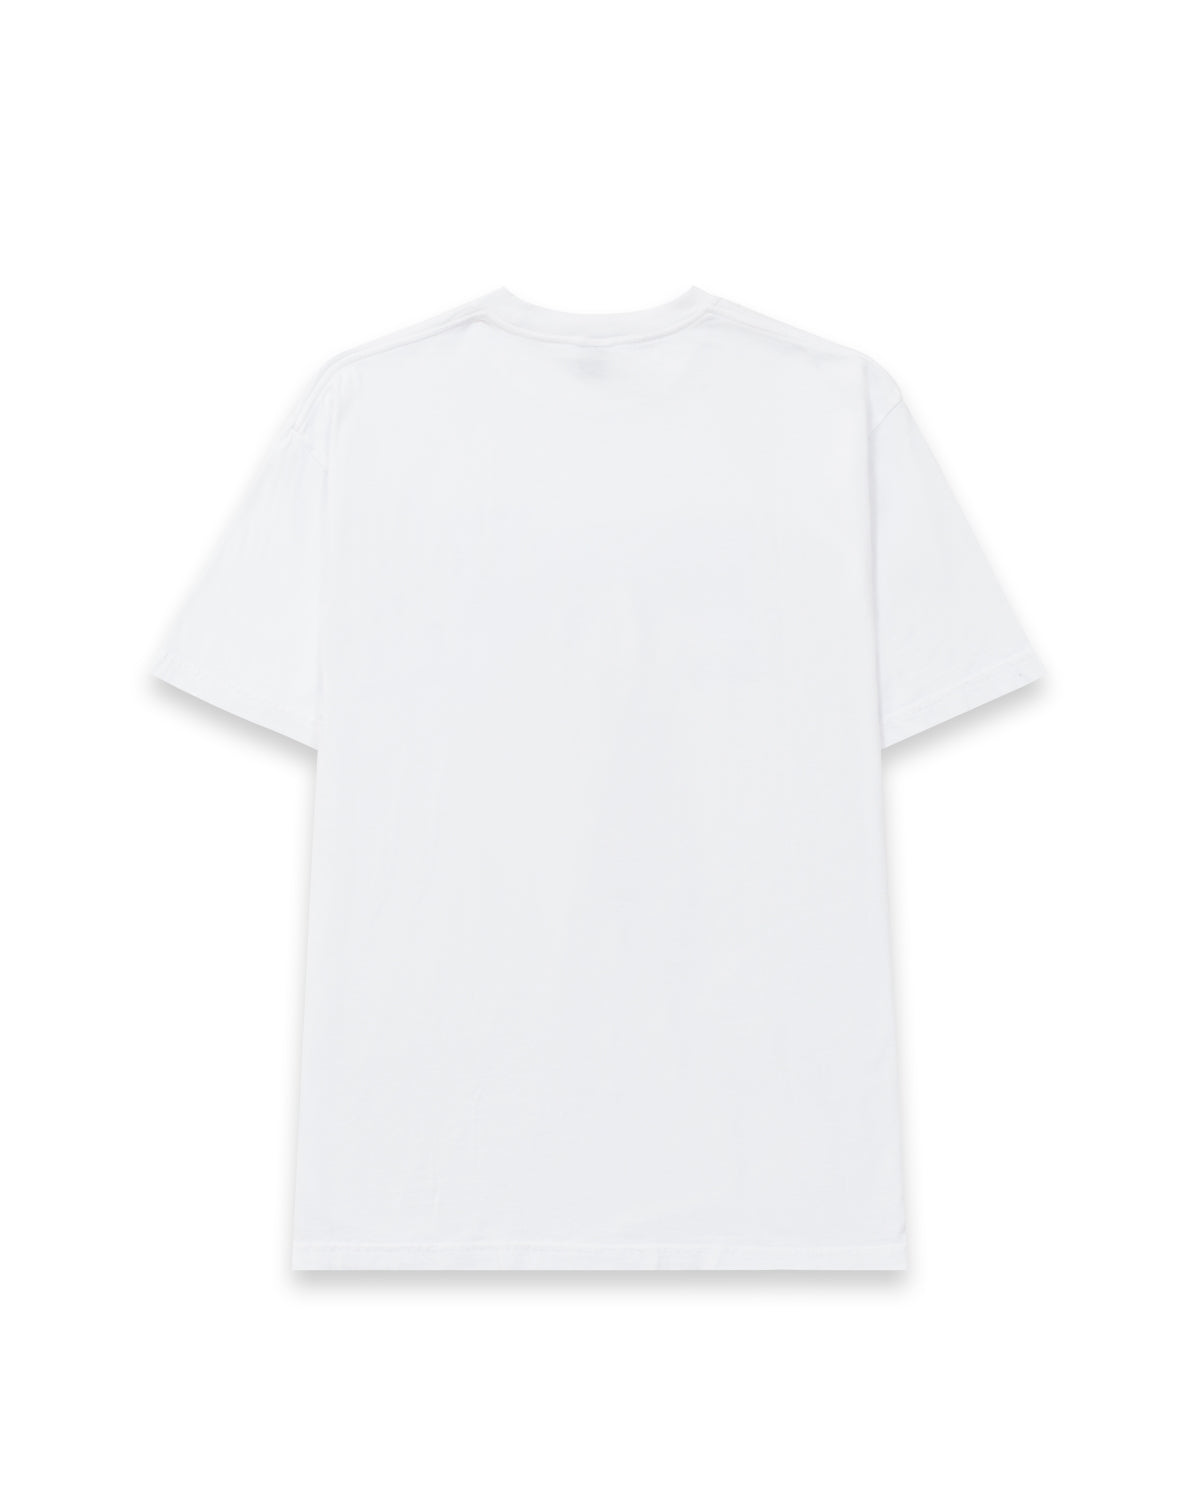 Brain Dead x Slam Jam Anarchy Bunny Love T-Shirt - White